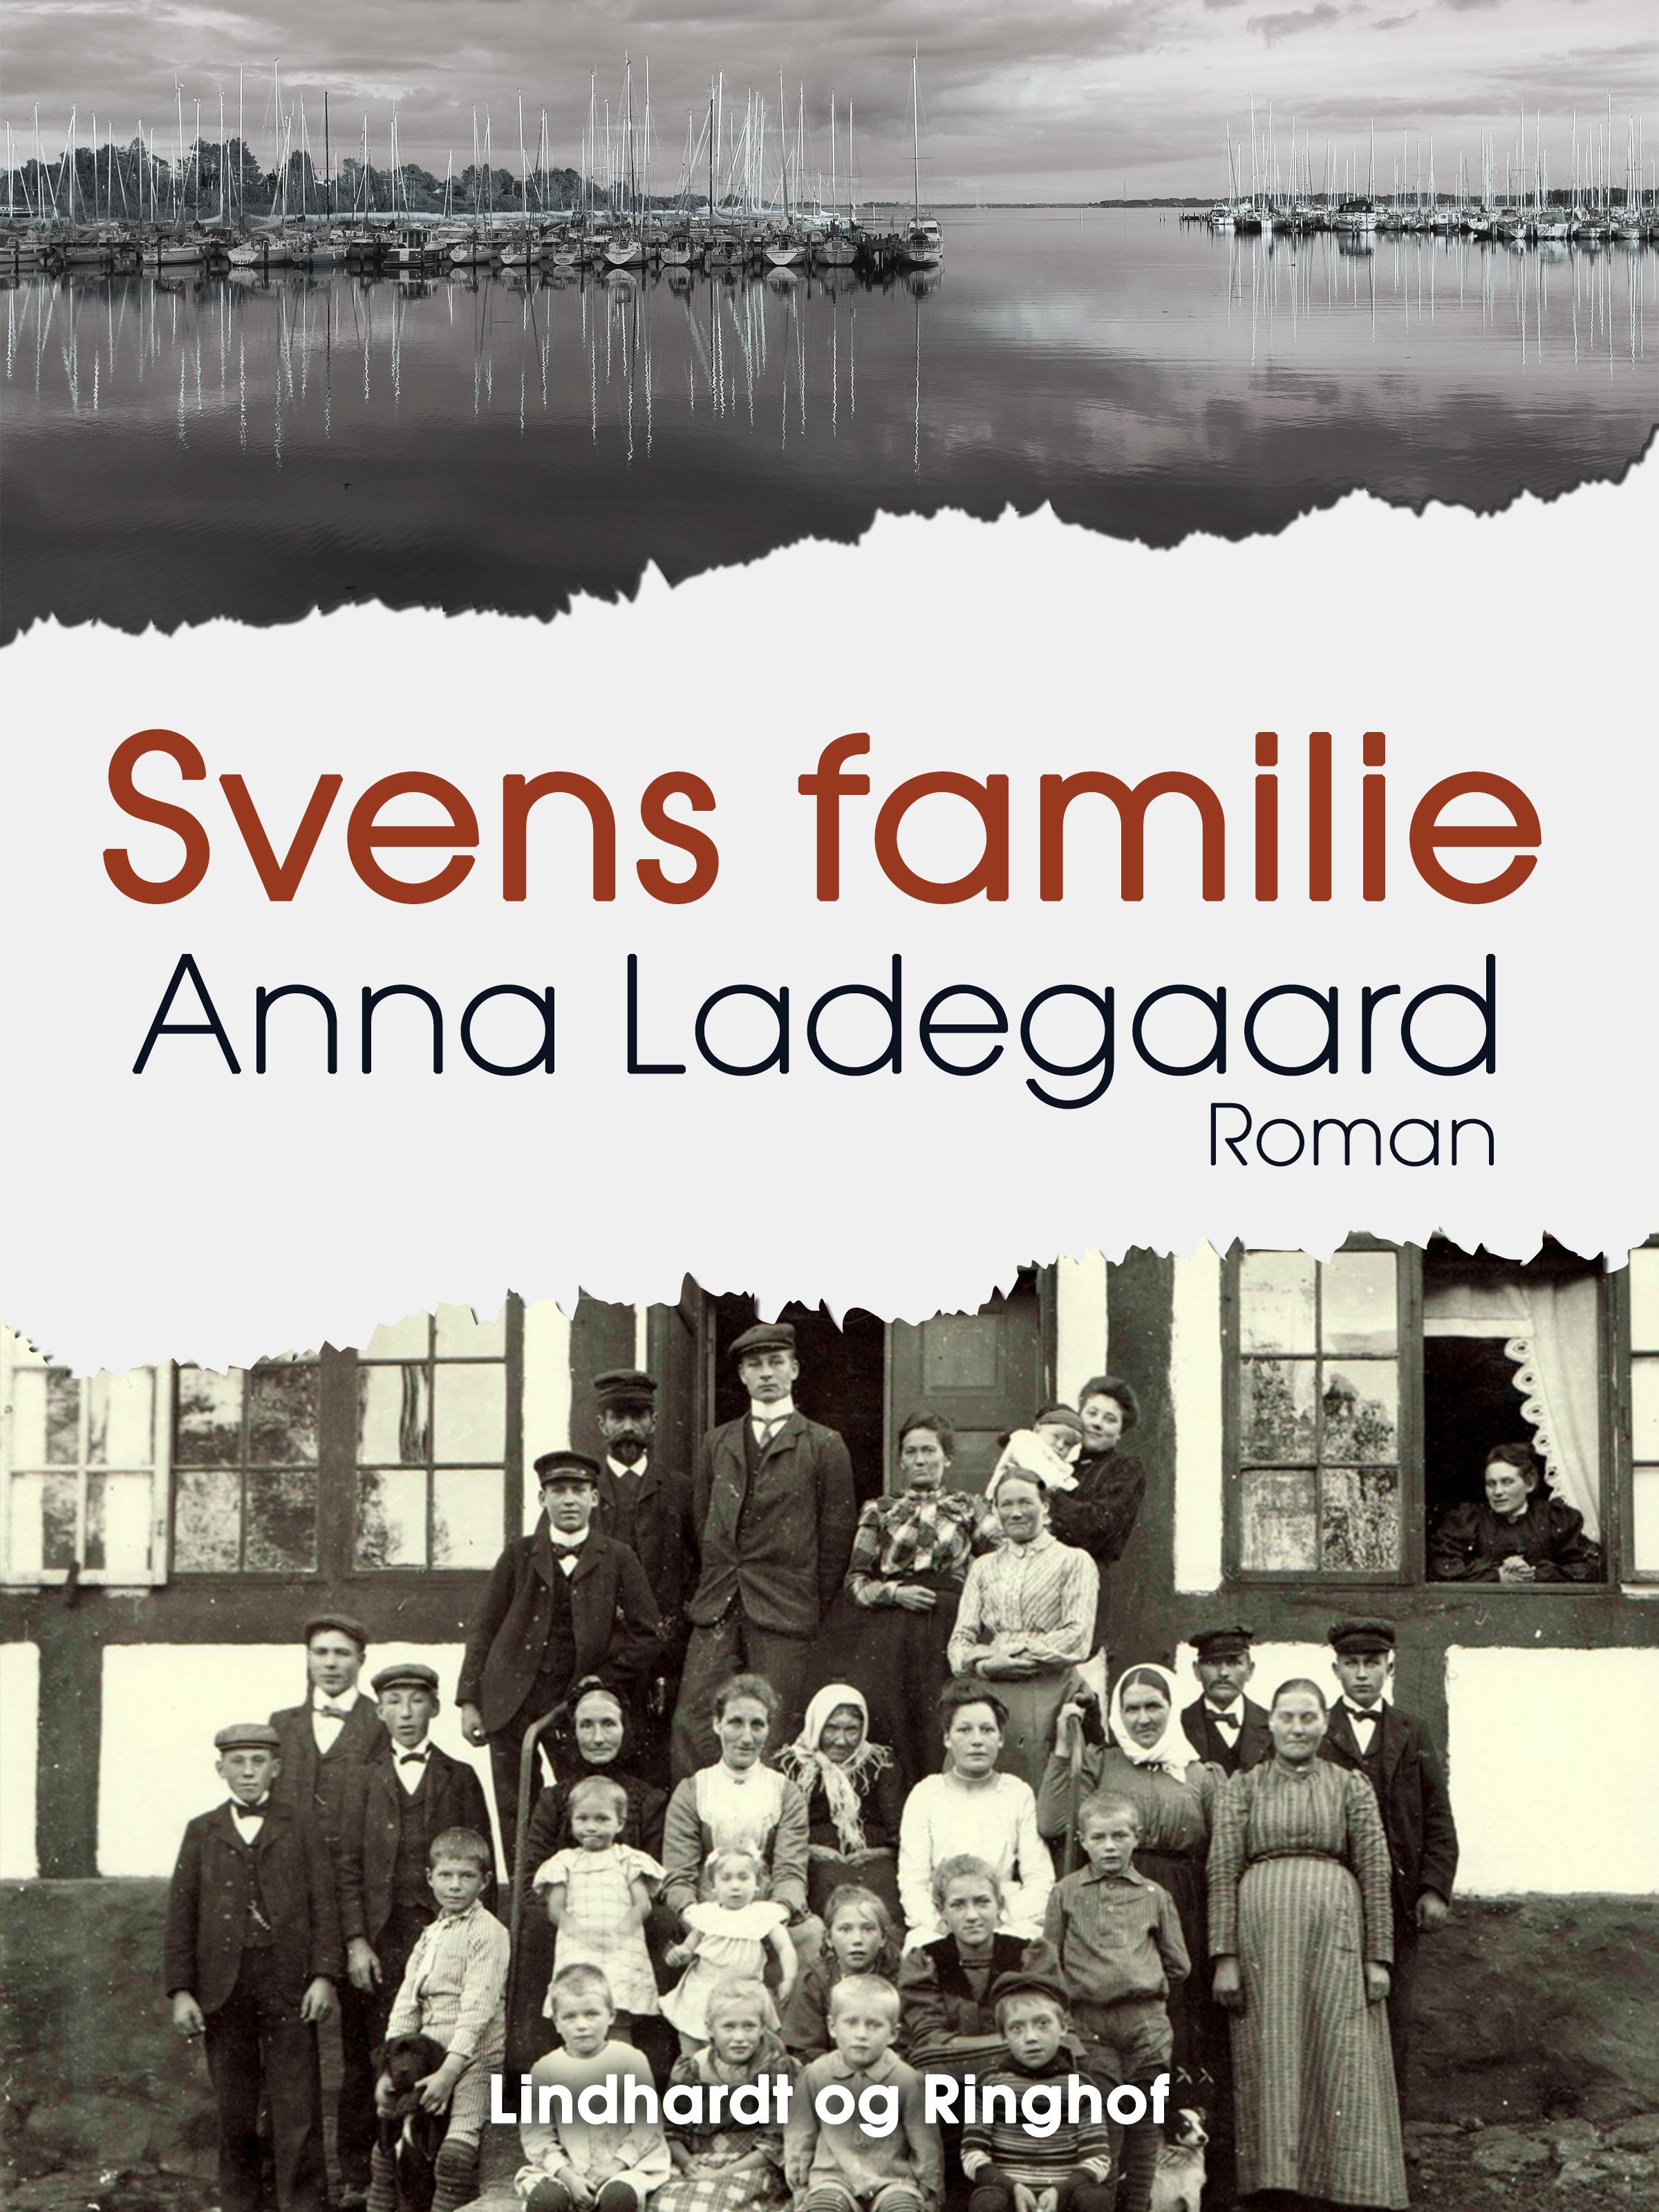 Svens familie, e-bog af Anna Ladegaard